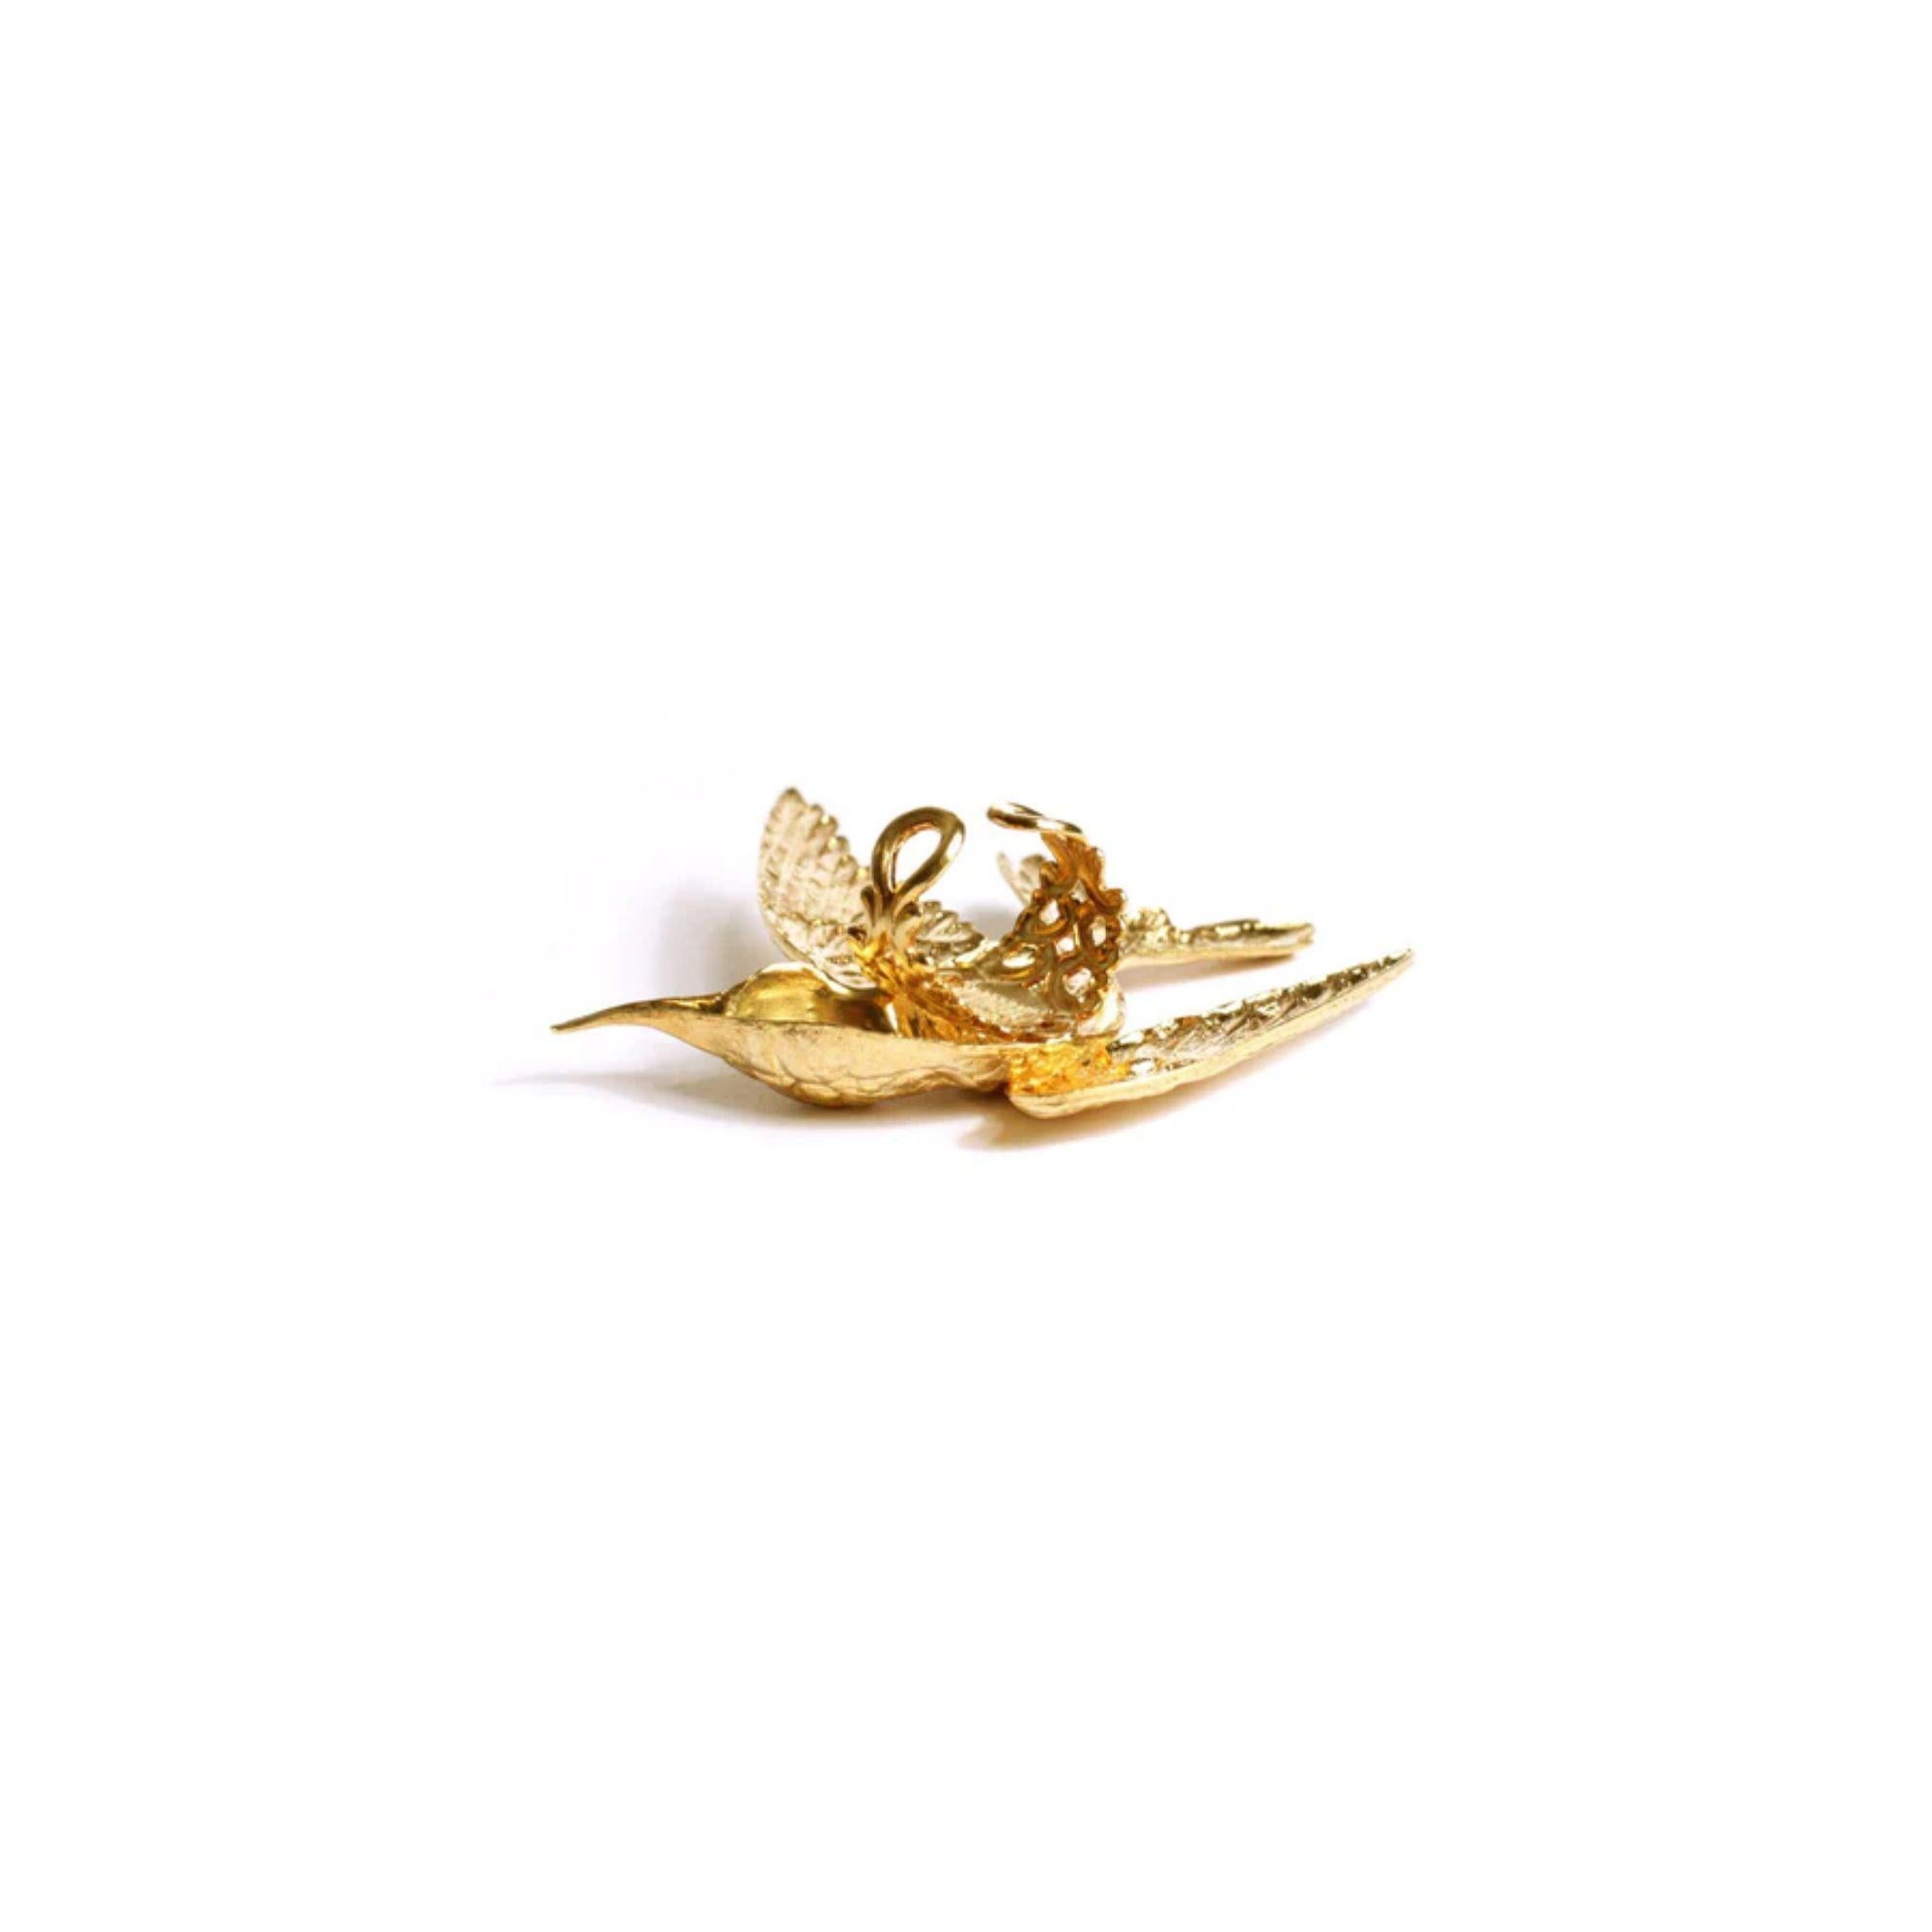 Atemberaubender Kolibri-Ring mit beweglichem Flügel! Ein einzigartiger Ring in Cocktailgröße, der alle Blicke auf sich zieht und Ihre Stimmung hebt. Hergestellt in Amerika. 24k Gelbgold vergoldet auf Messing.

Der Kolibri symbolisiert im Allgemeinen